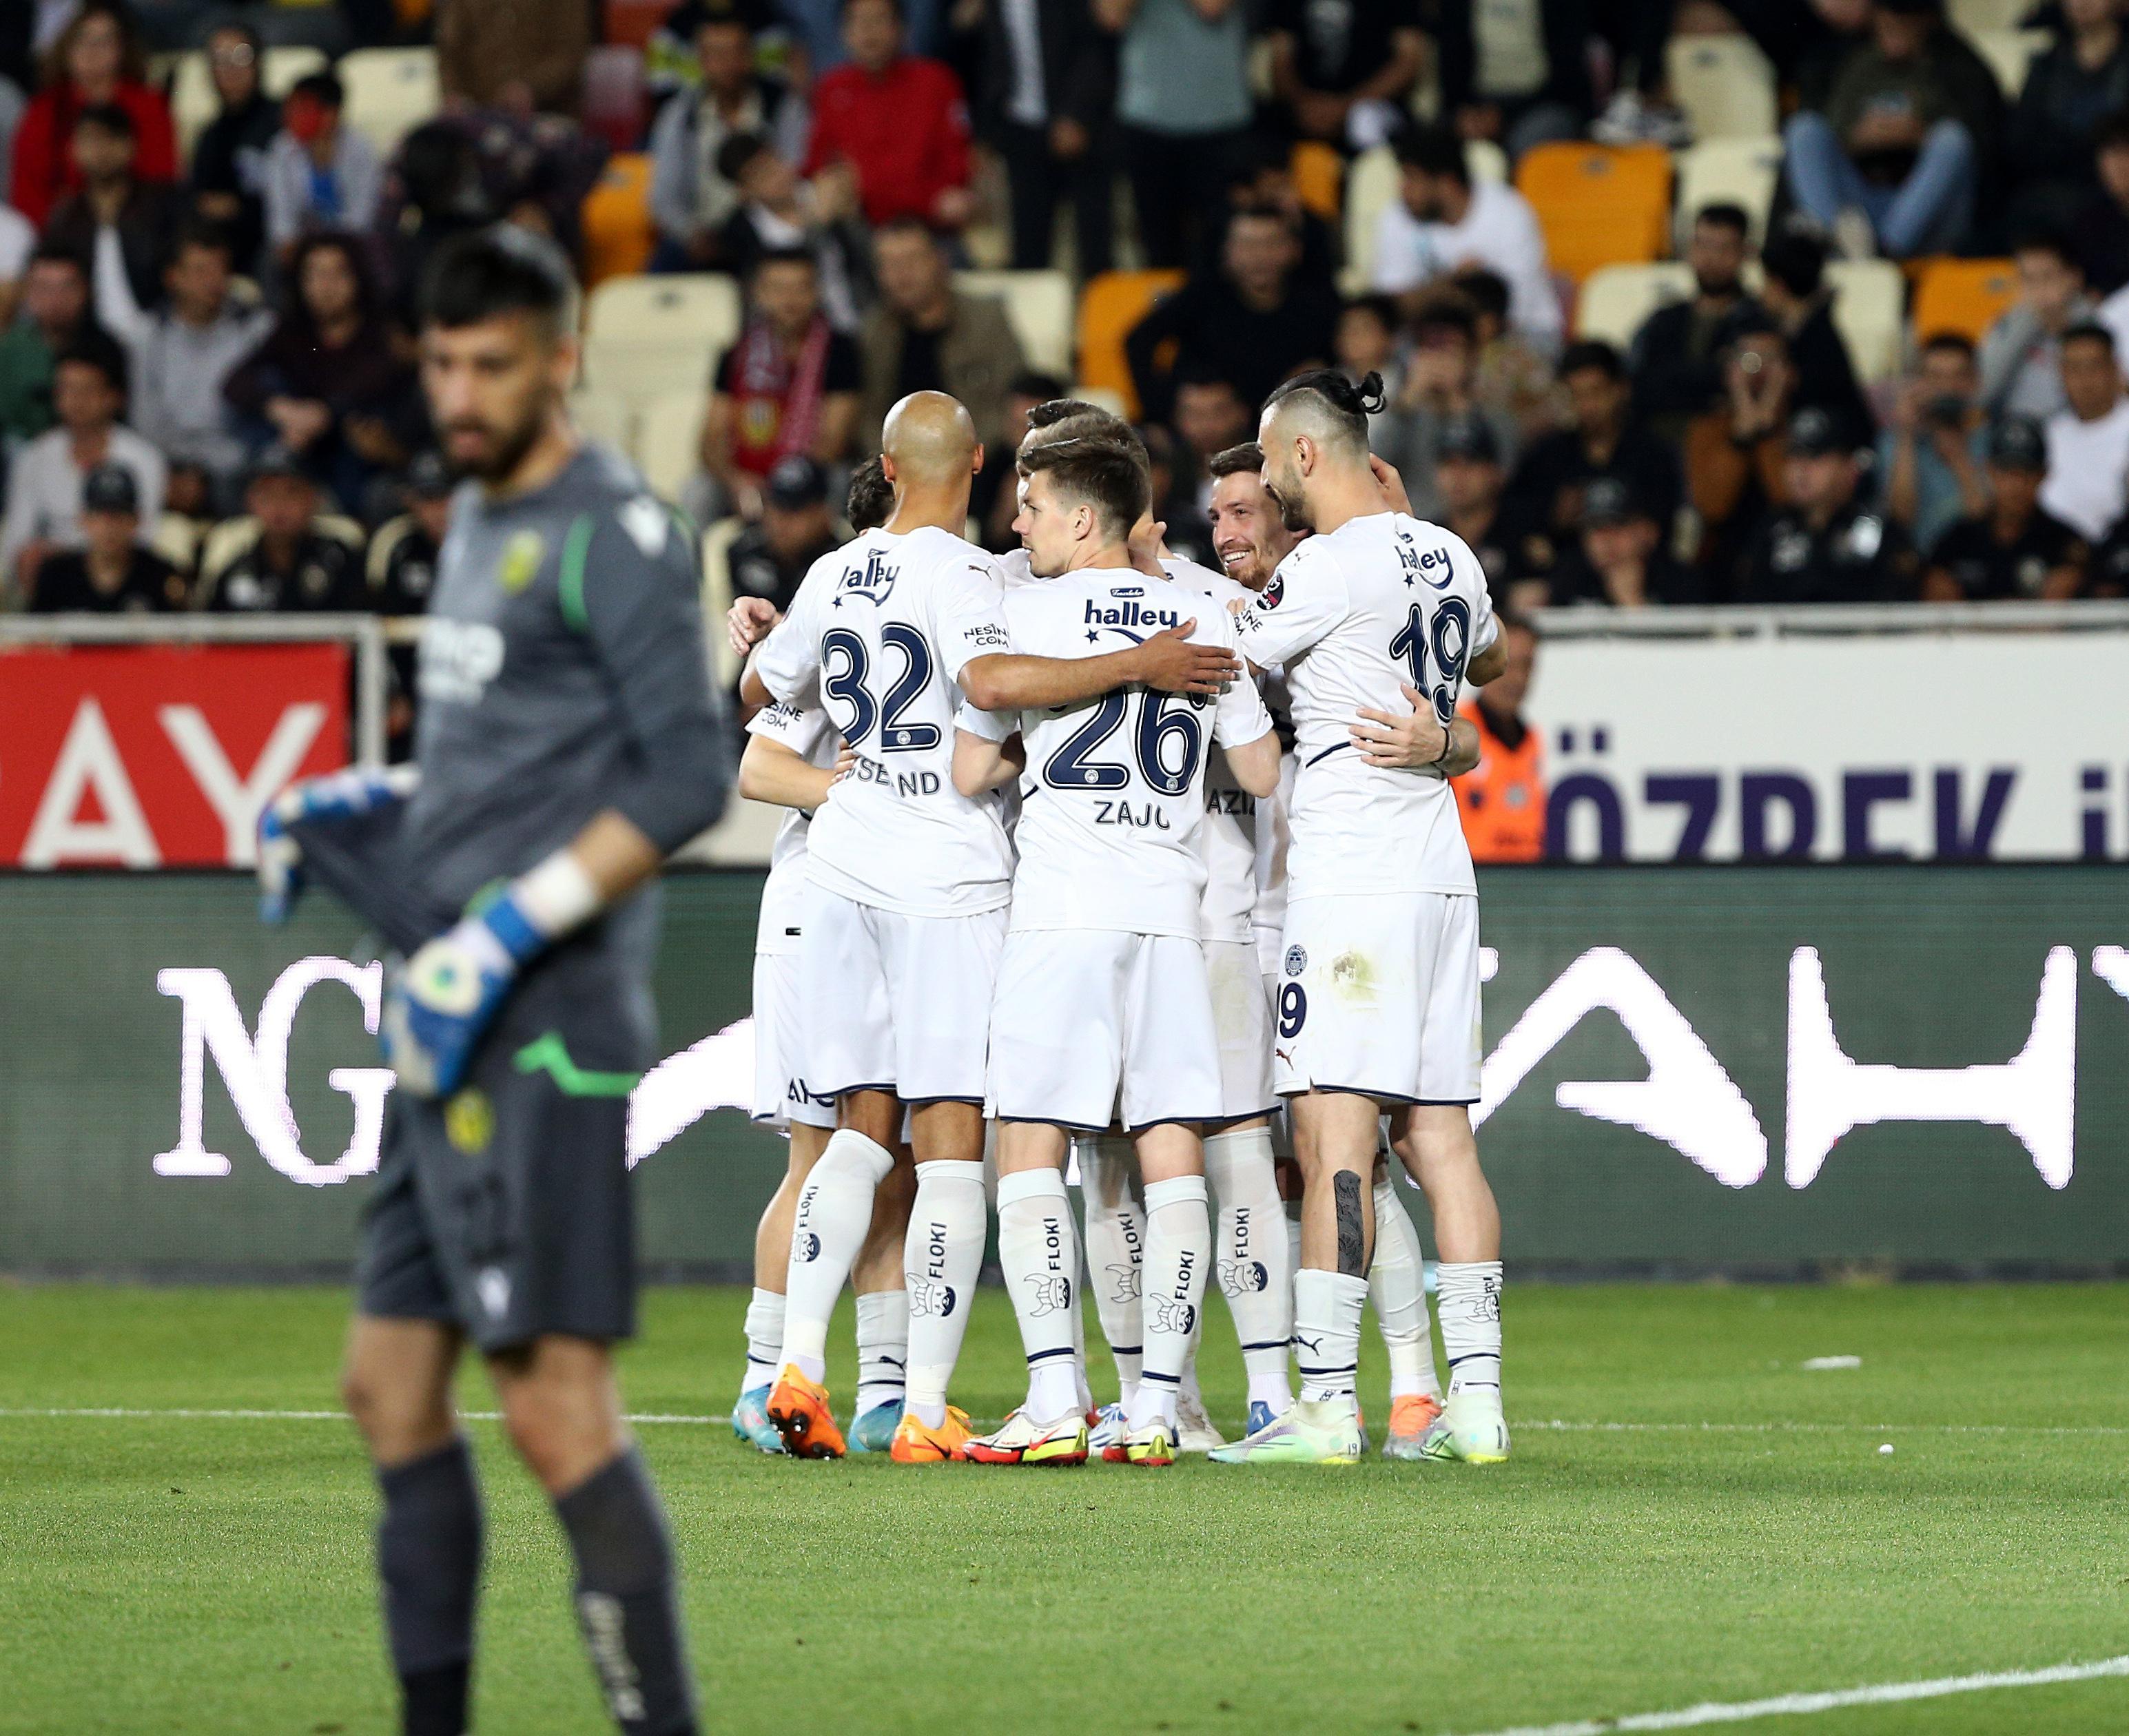 (ÖZET) Yeni Malatyaspor - Fenerbahçe maç sonucu: 0-5